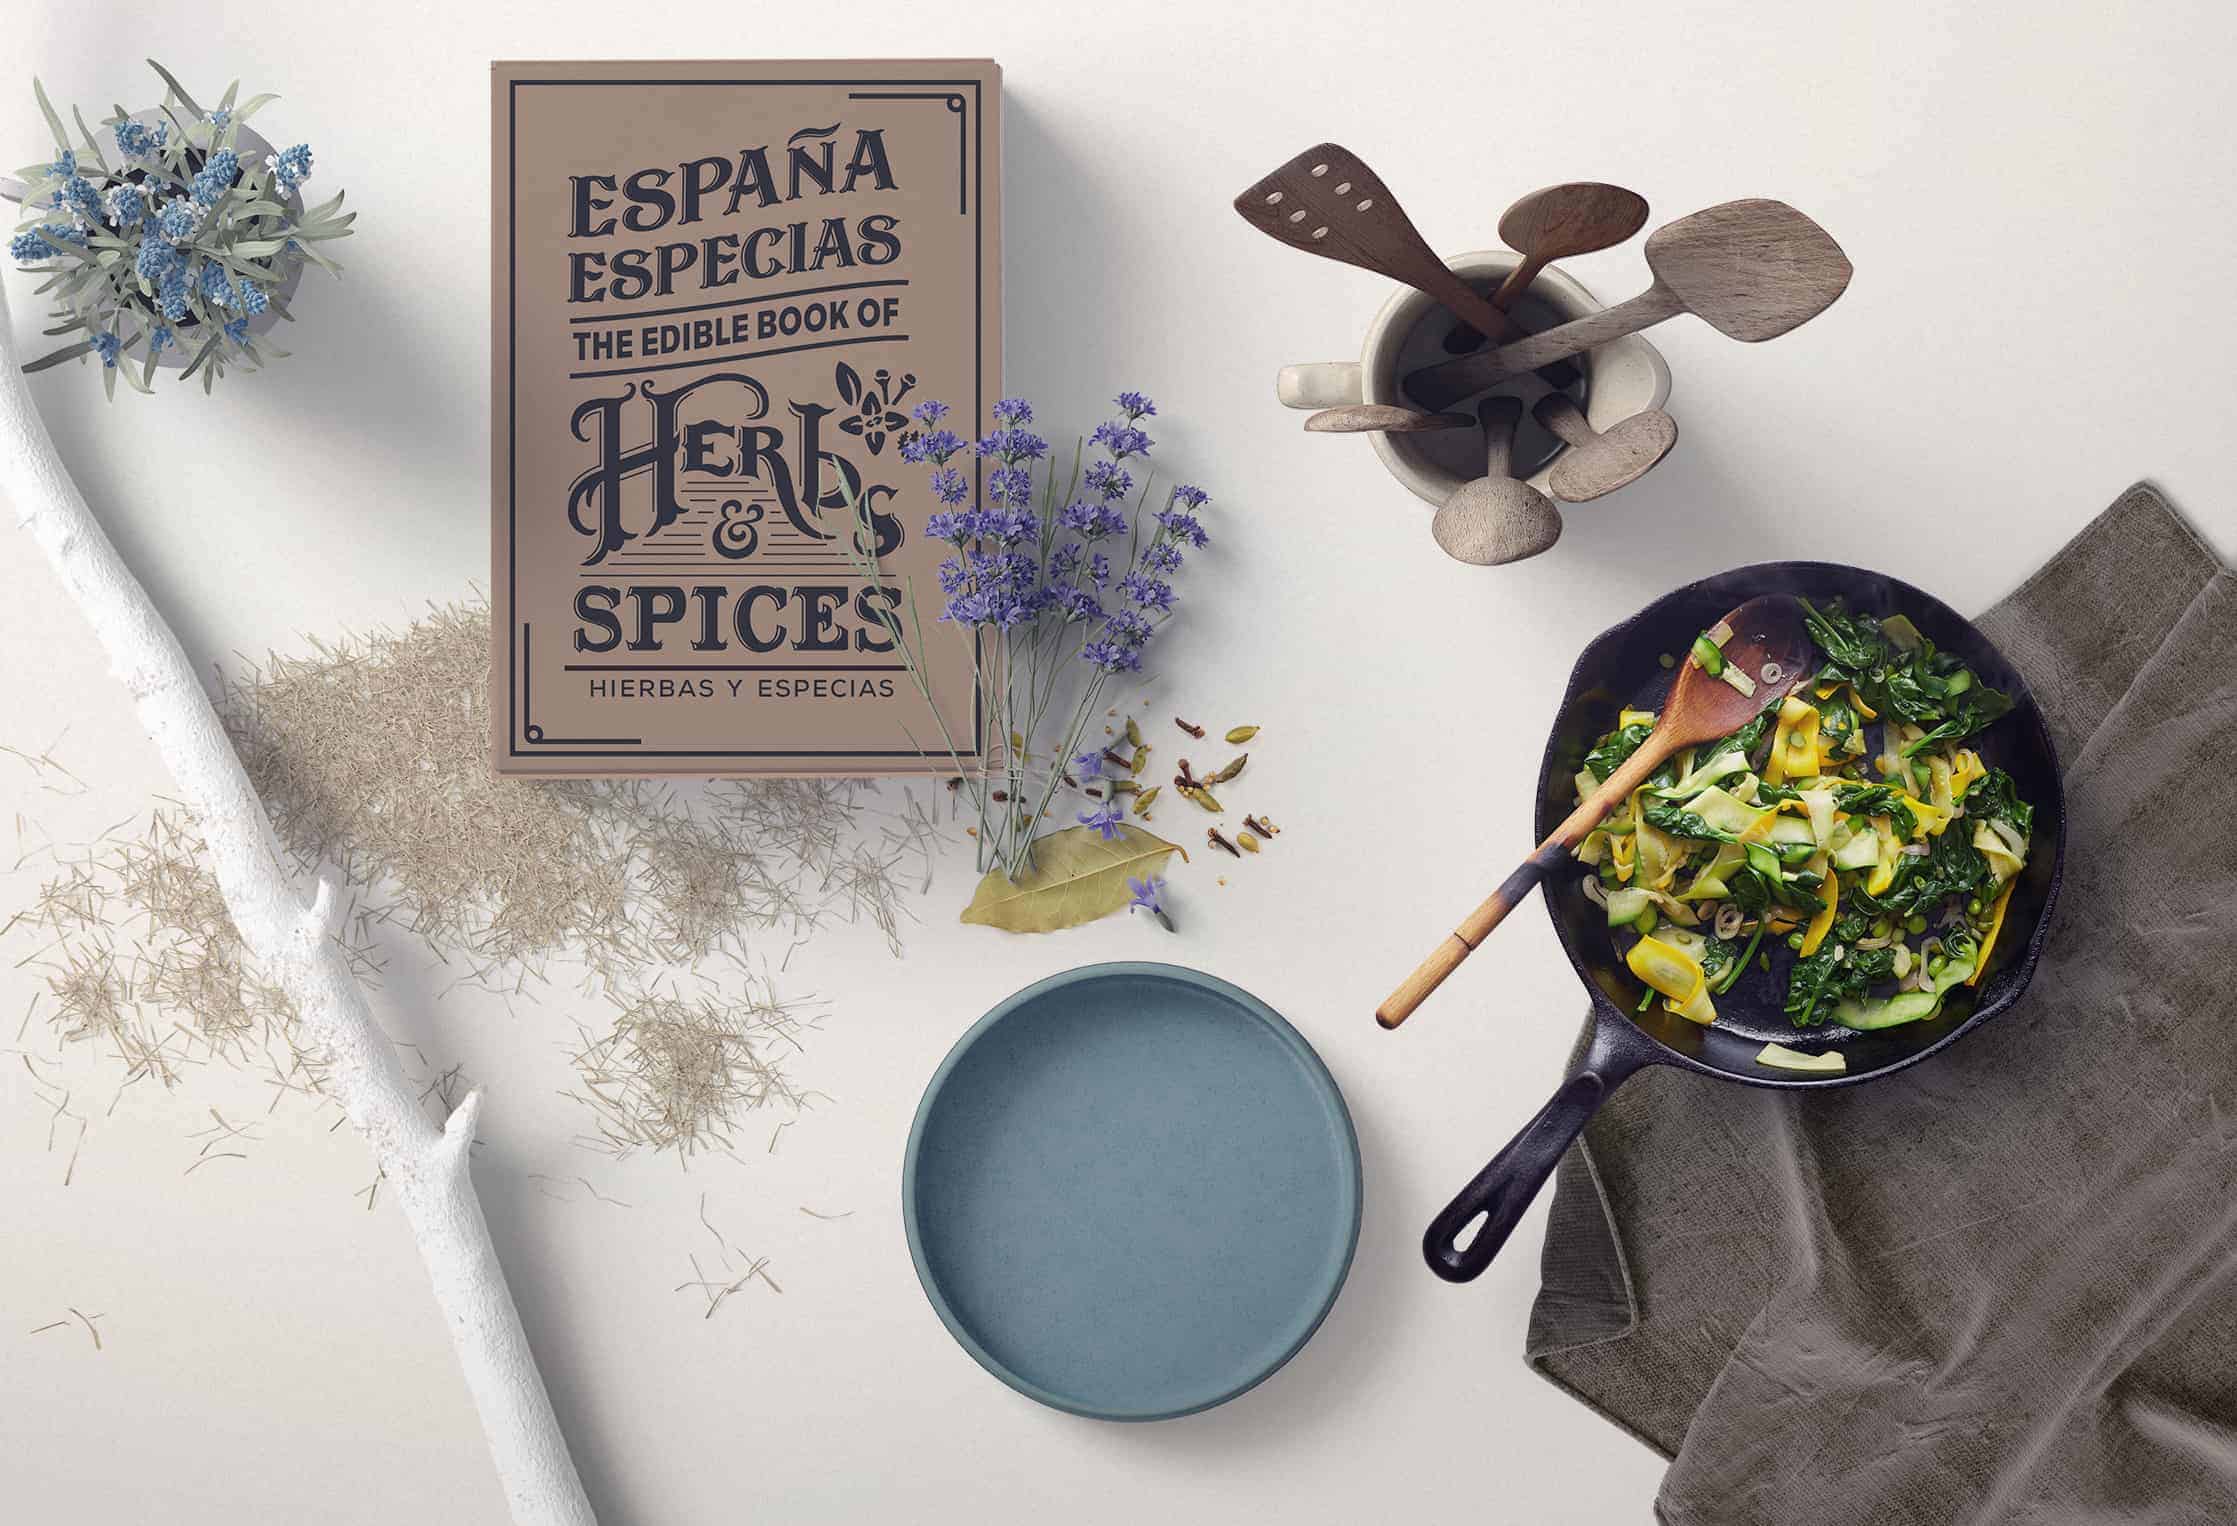 Espana Especias - The edible book of herbs and spices